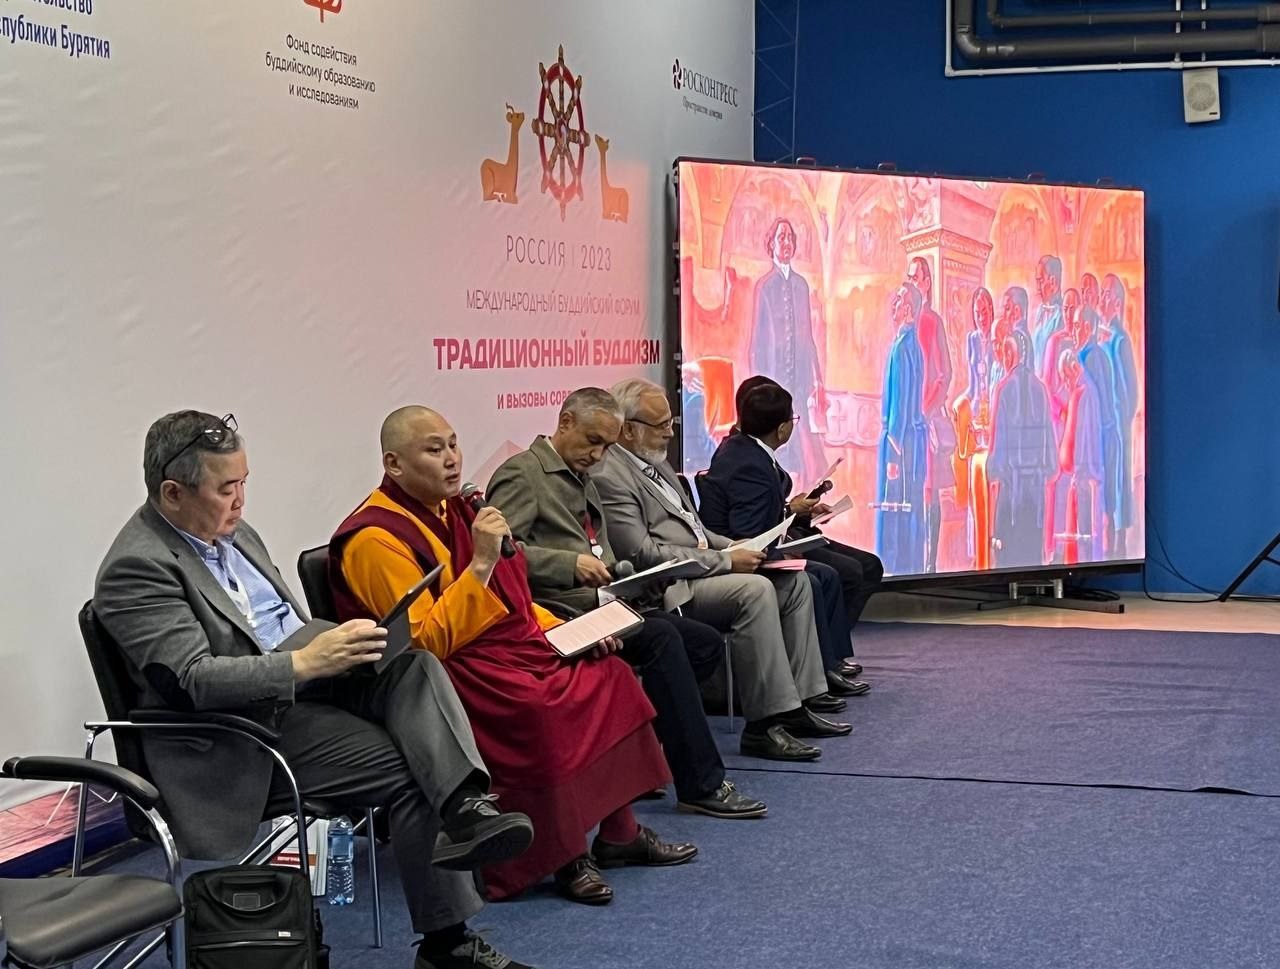 Буддийский форум в РФ - за мир и духовные ценности